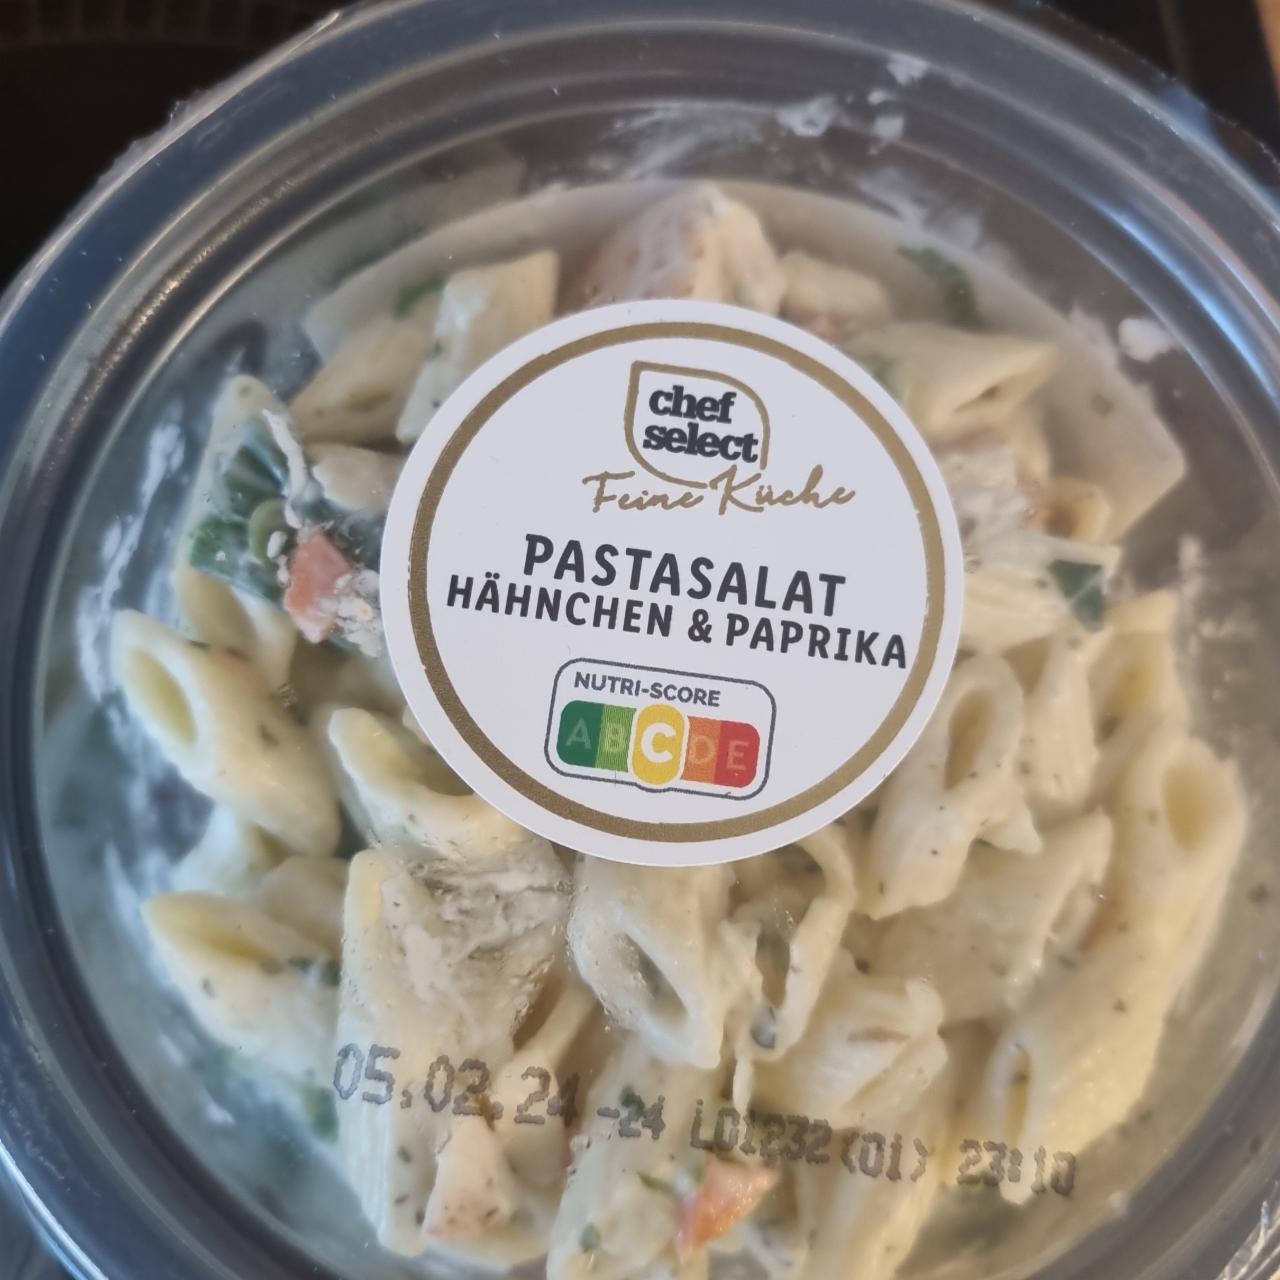 Fotografie - Pastasalat Hähnchen & Paprika Chef Select